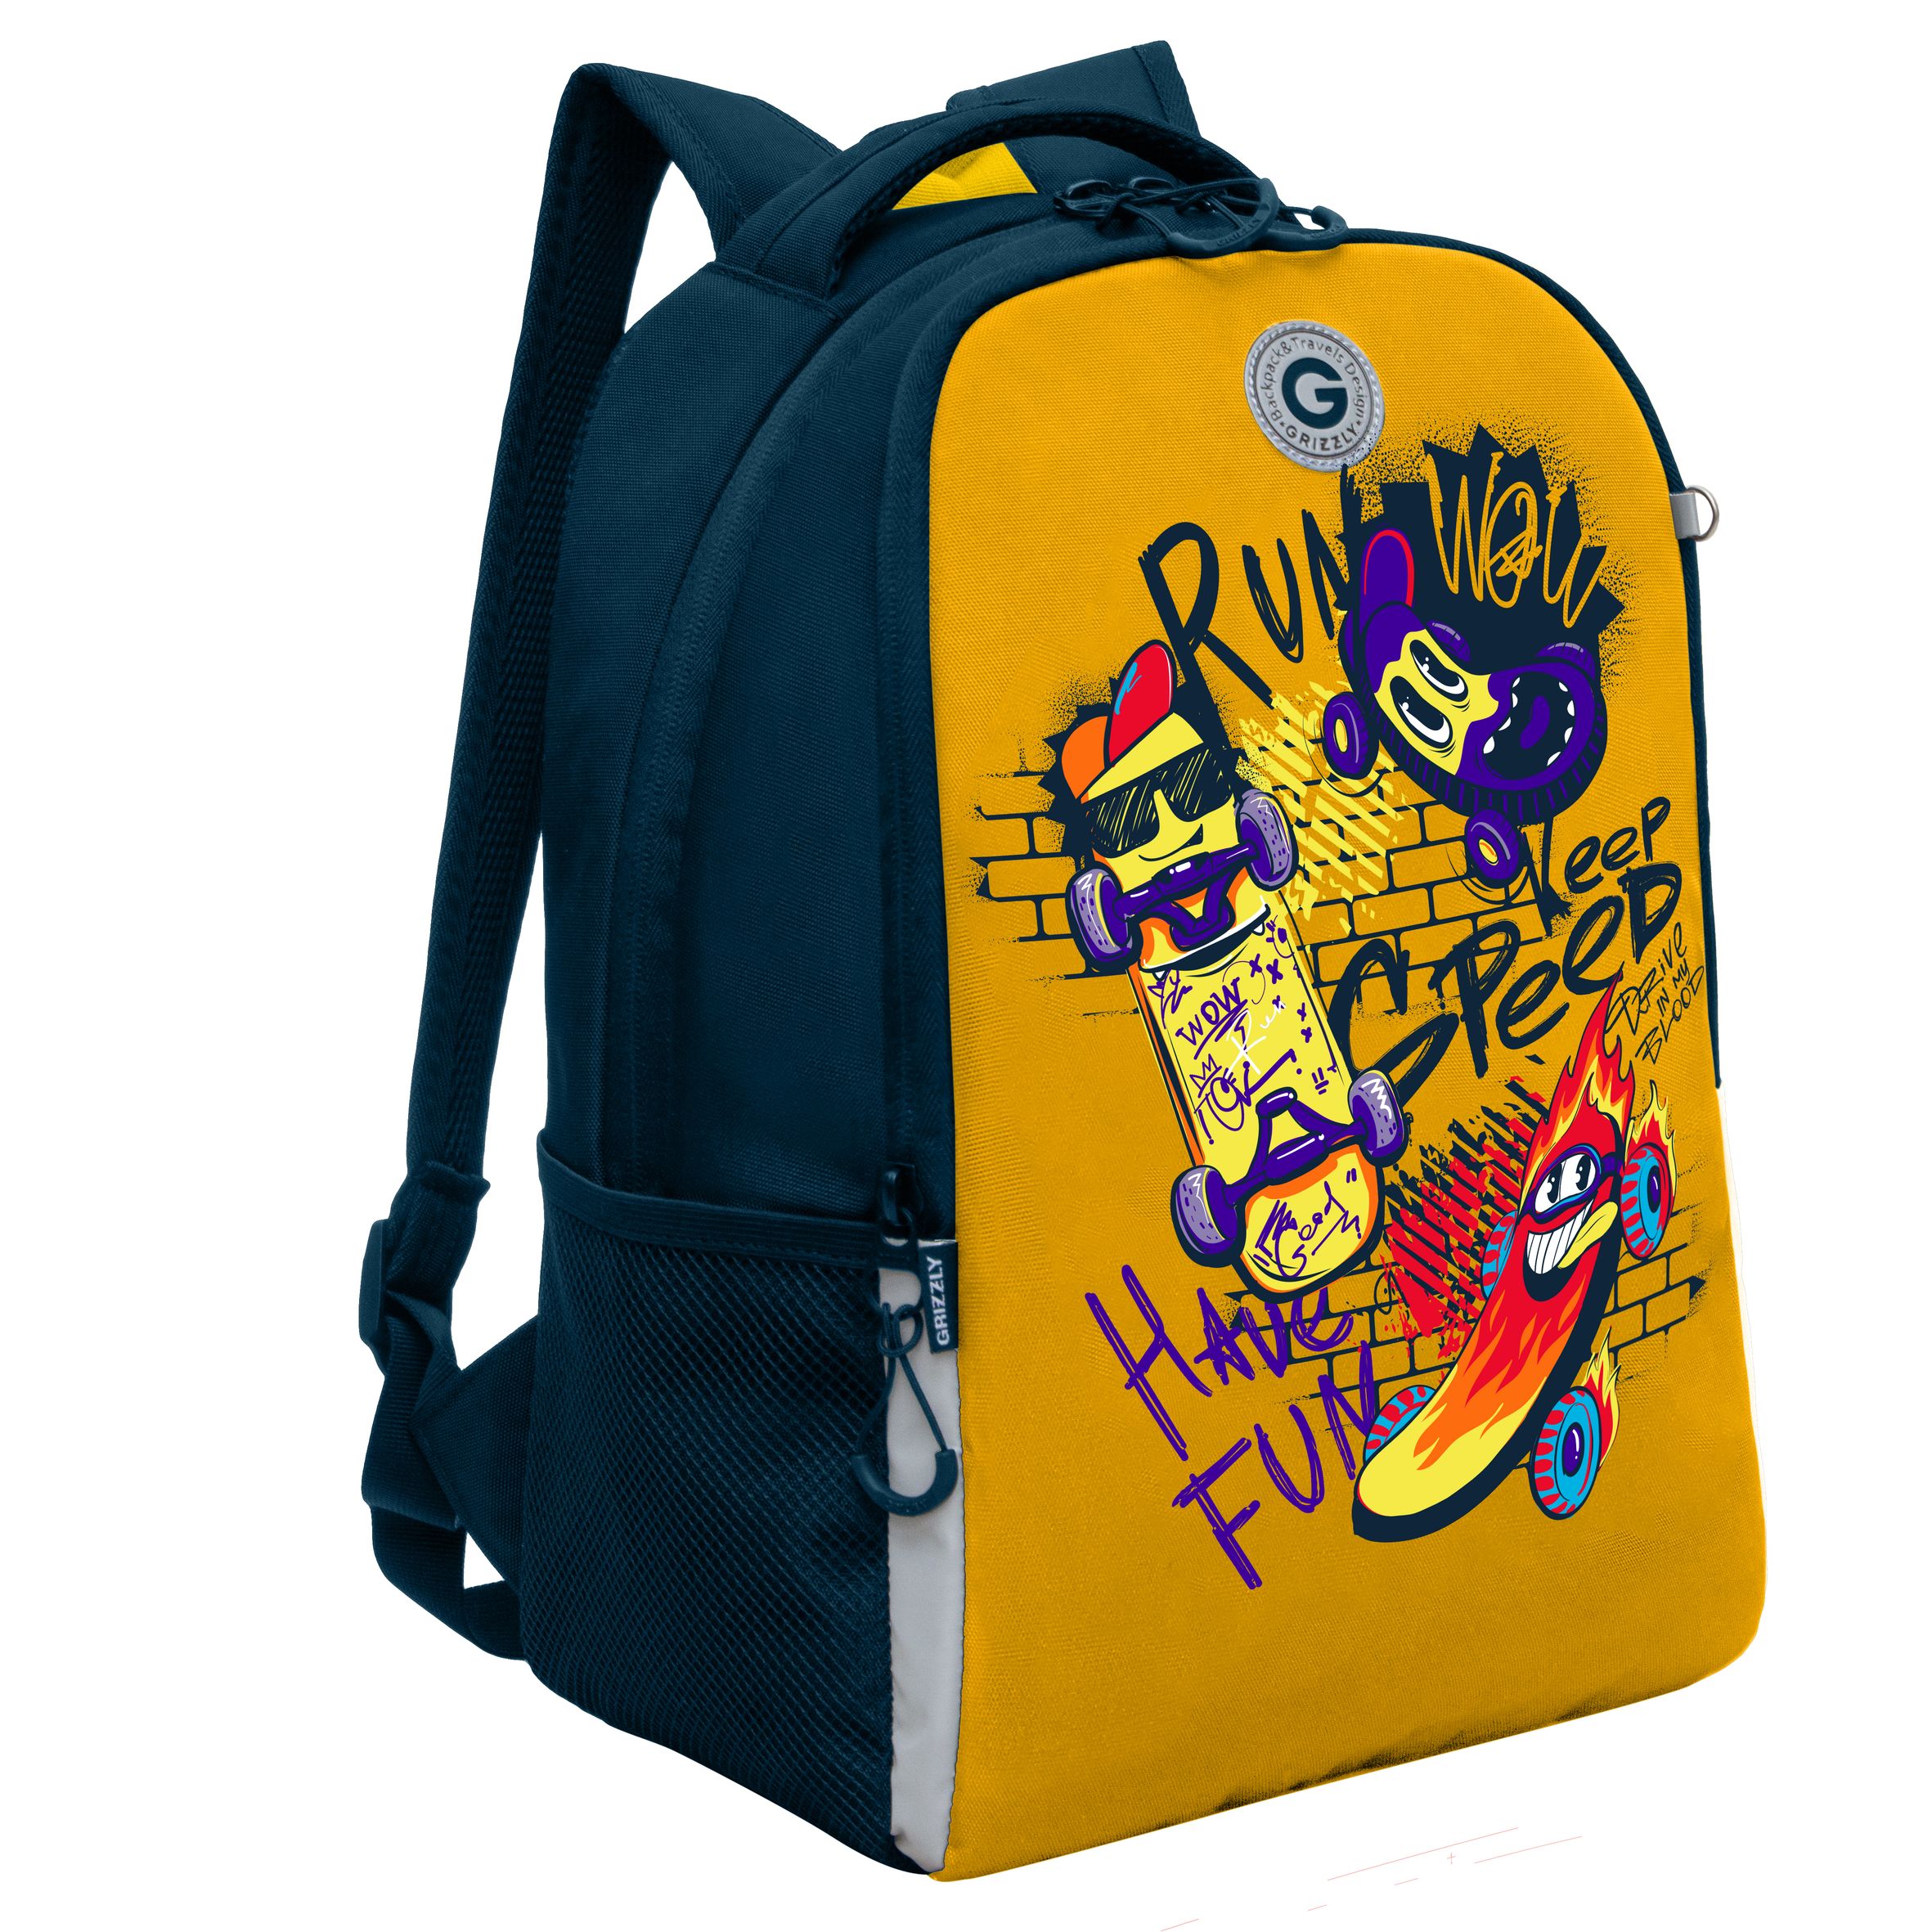 Рюкзак школьный GRIZZLY легкий с жесткой спинкой, 2 отделения, для мальчика RB-451-7/2 рюкзак школьный grizzly с карманом для ноутбука 13 2 отделения для девочки rg 466 3 2